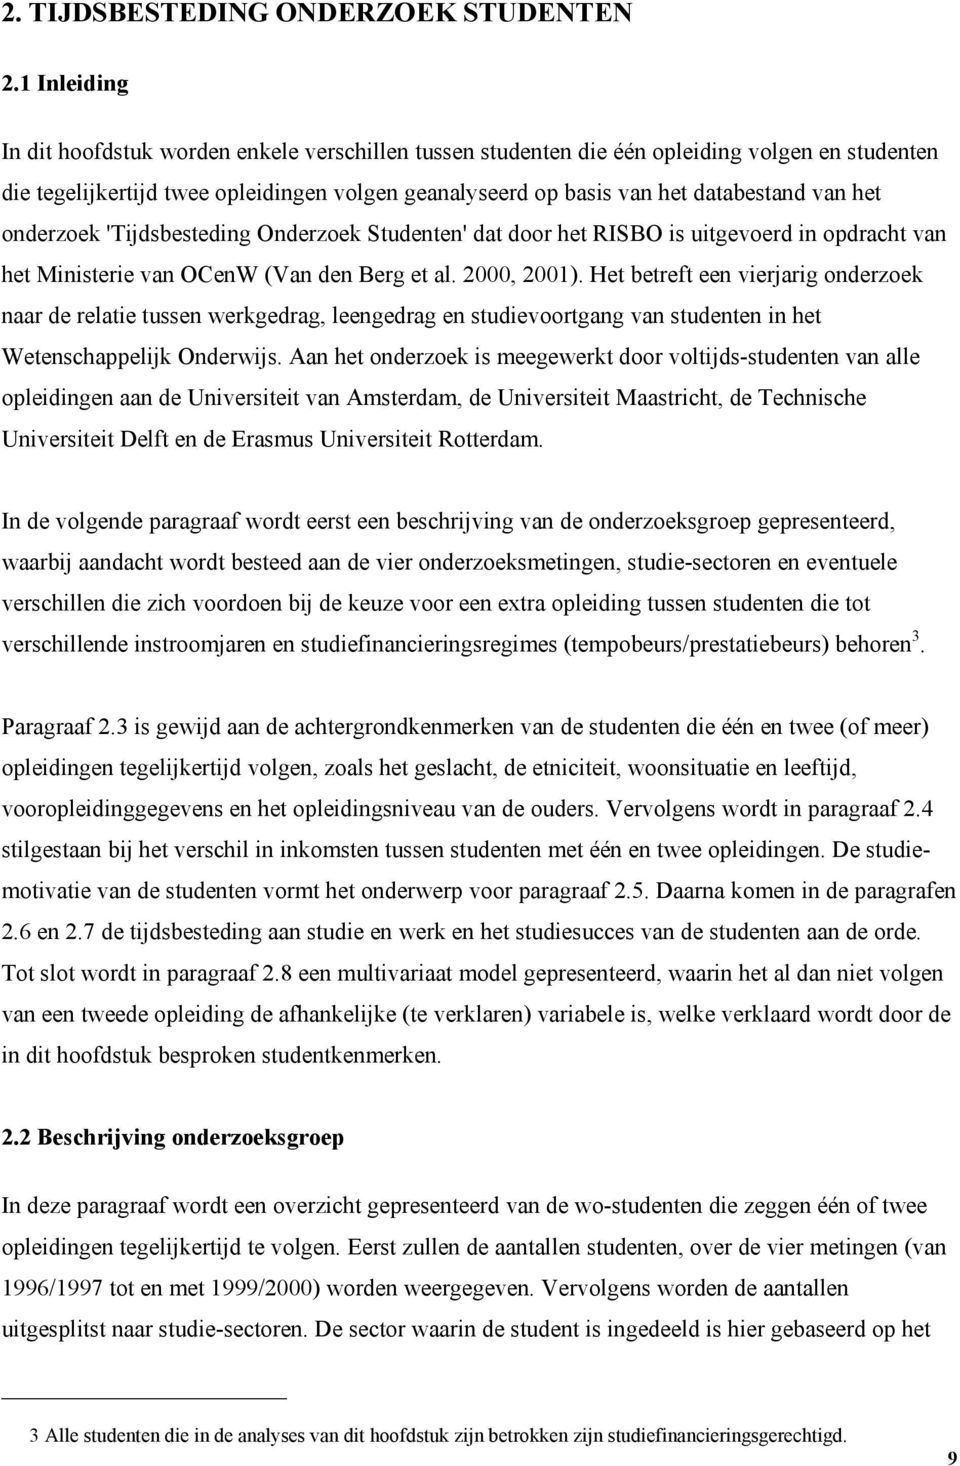 het onderzoek 'Tijdsbesteding Onderzoek Studenten' dat door het RISBO is uitgevoerd in opdracht van het Ministerie van OCenW (Van den Berg et al. 2000, 2001).